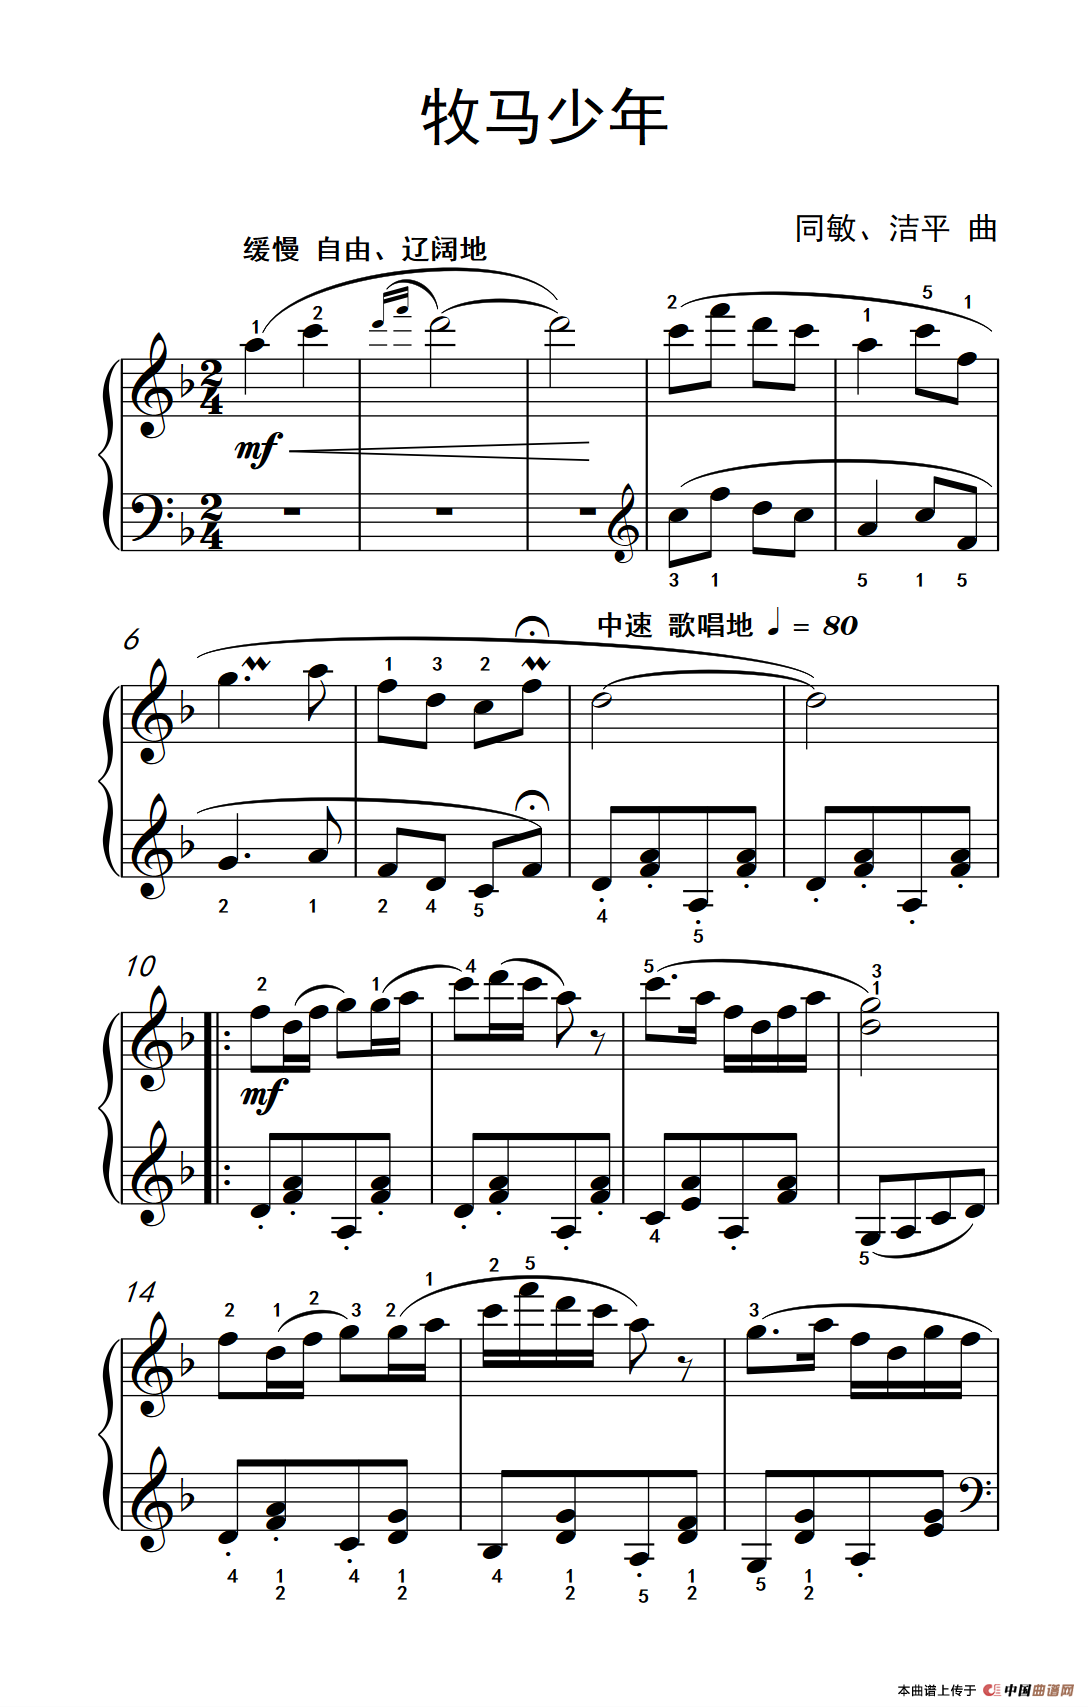 《牧马少年》钢琴曲谱图分享